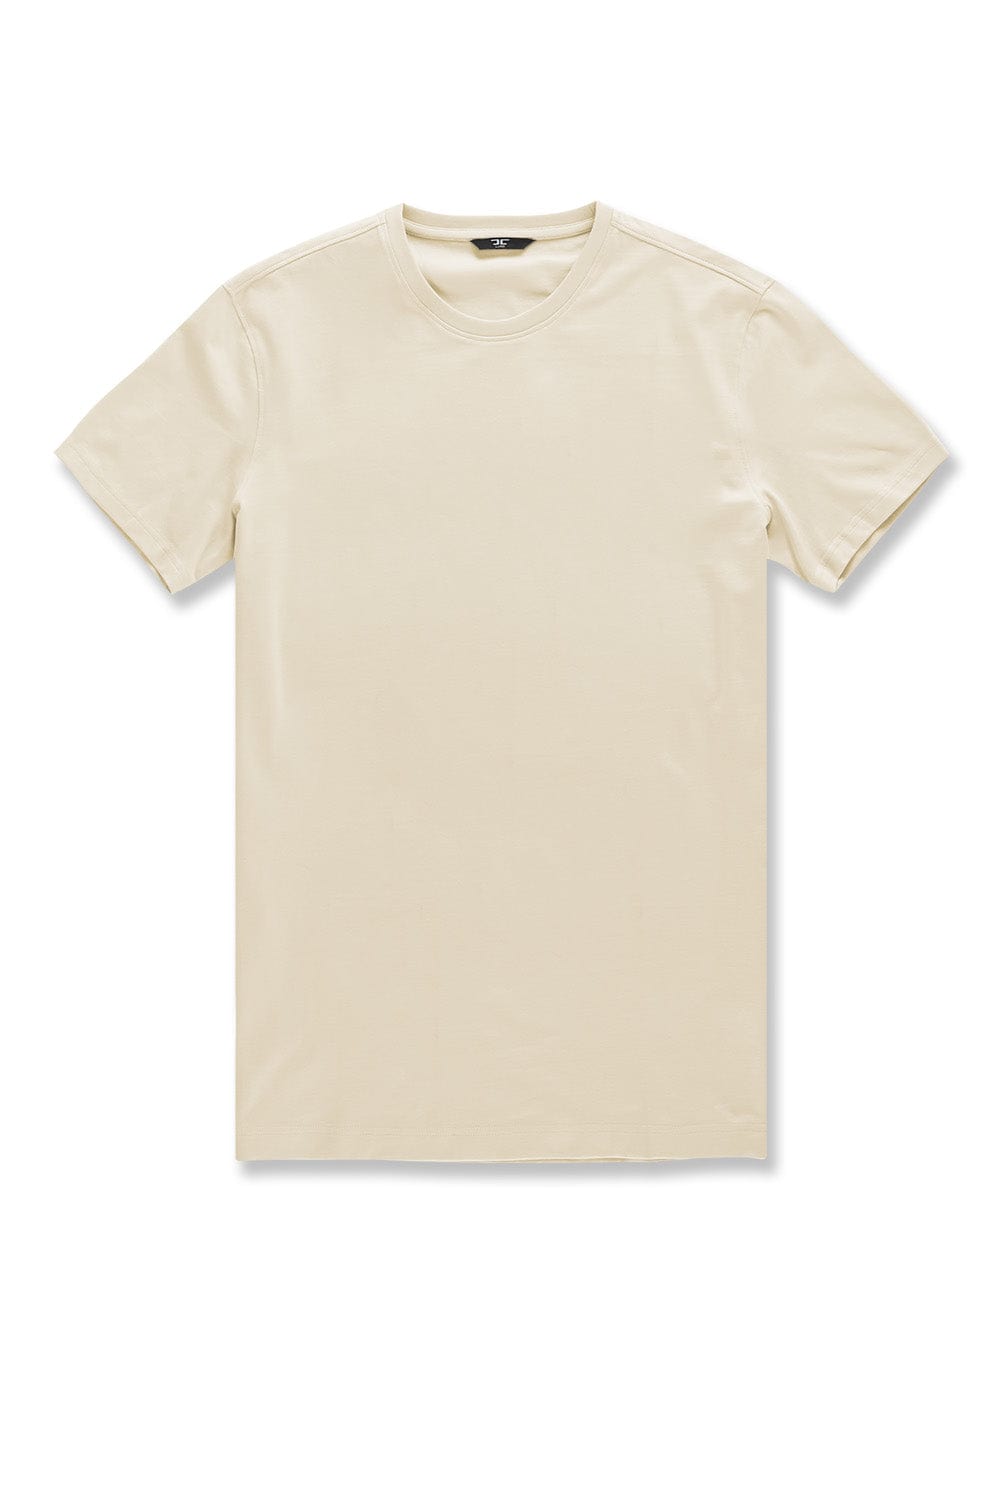 JC Big Men Big Men's Premium Crewneck T-Shirt Cream / 4XL